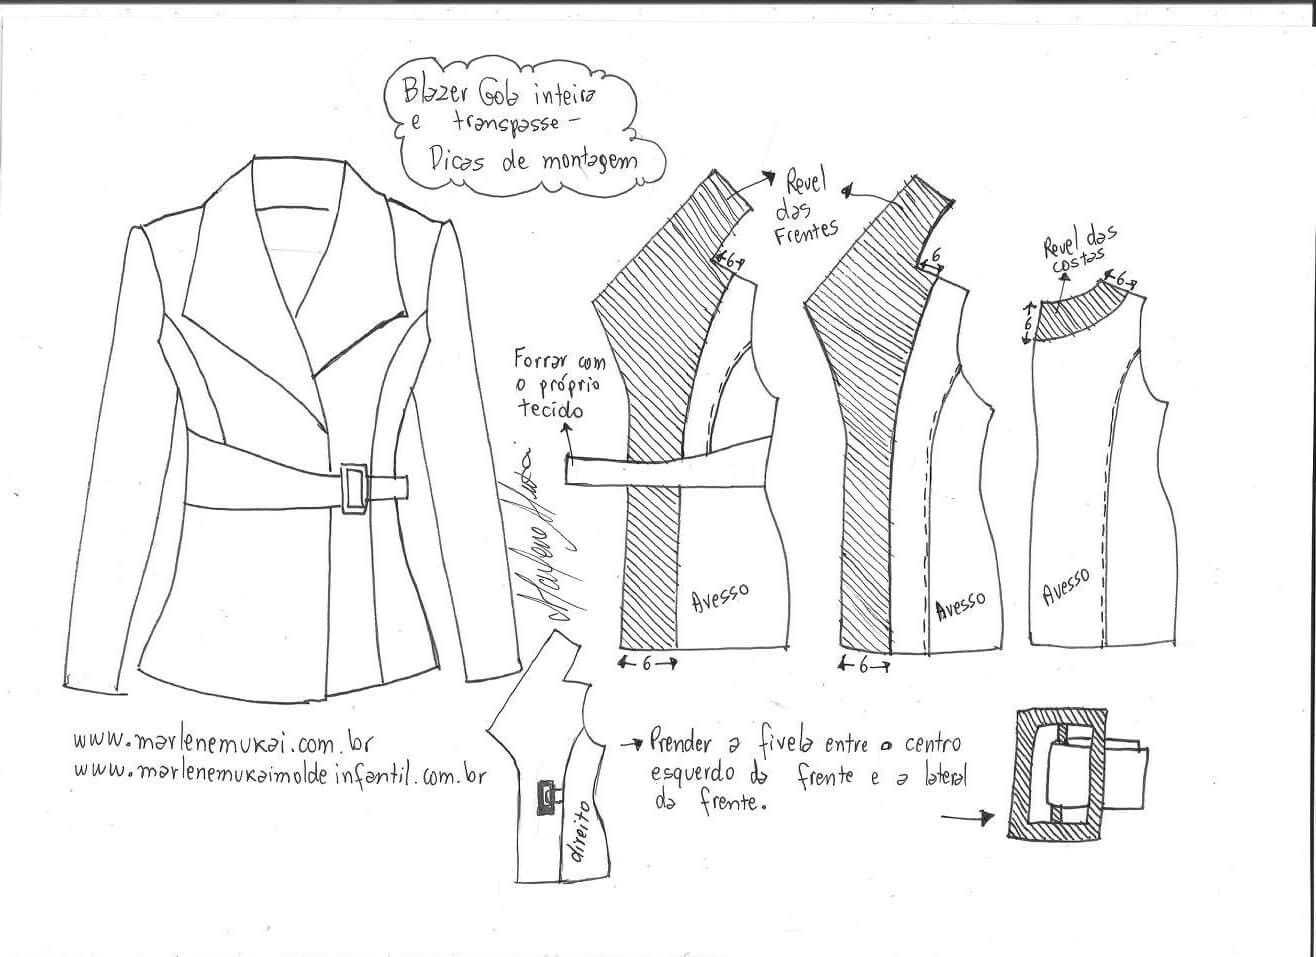 Как сшить пальто-халат выкройка пальто-халата с запахом, с капюшоном, пошаговый пошив пальто | строитель промышленник